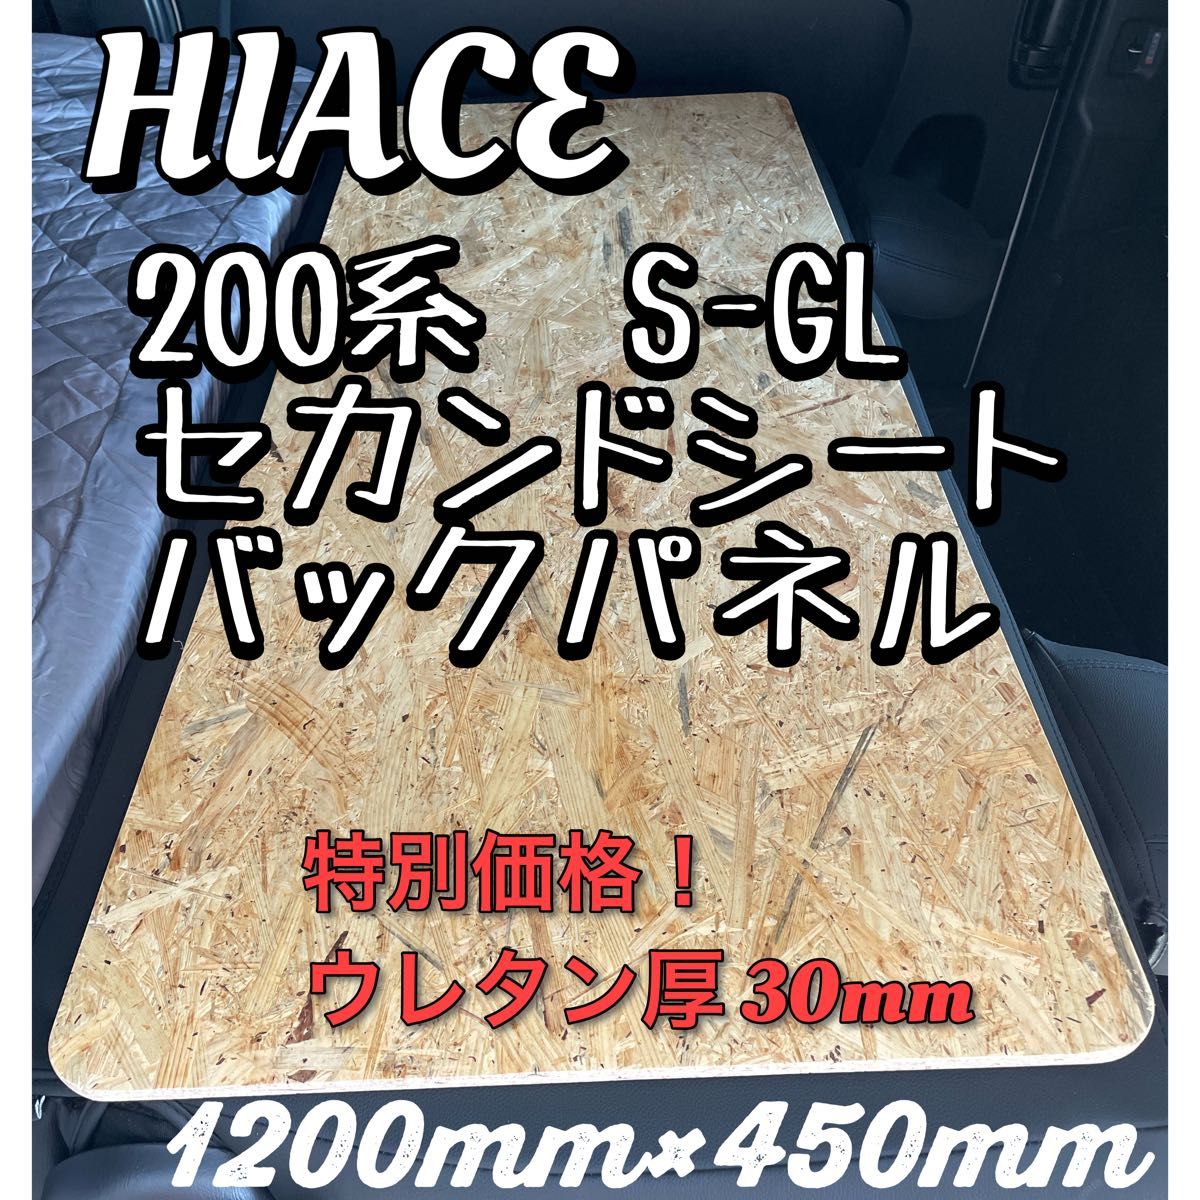 特別価格!厚3cmハイエースS-GL 標準ボディ用 セカンドシート バックパネル